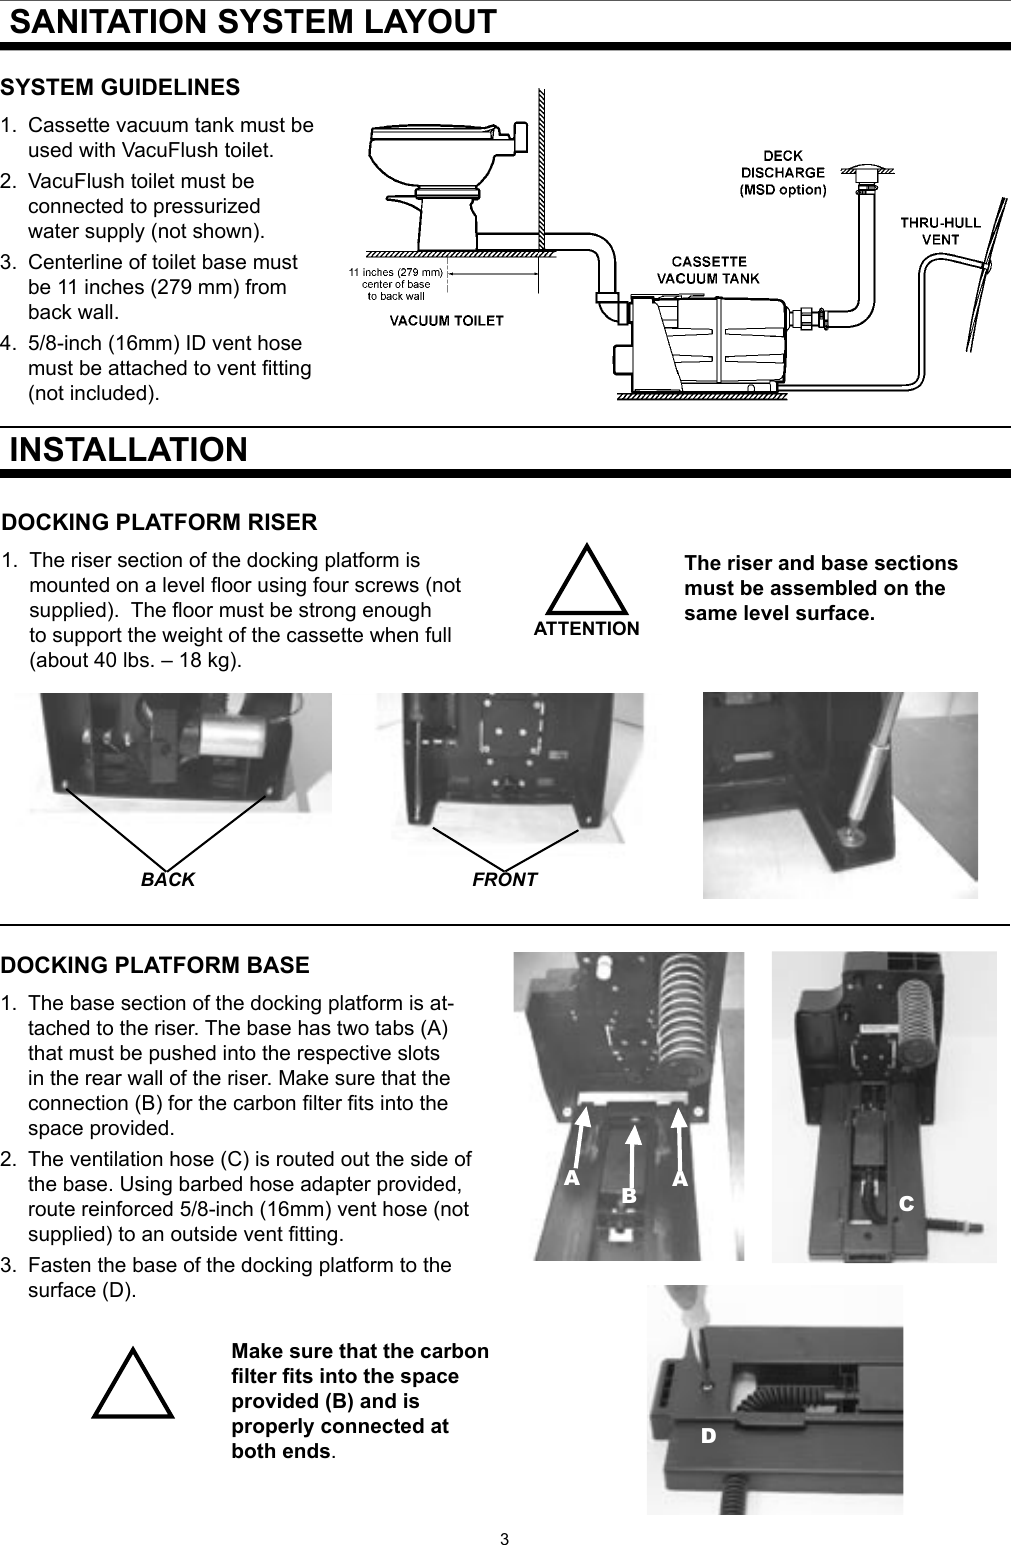 Sealand 1 2500 Series Users Manual VacuFlush Cassette Vacuum Tank